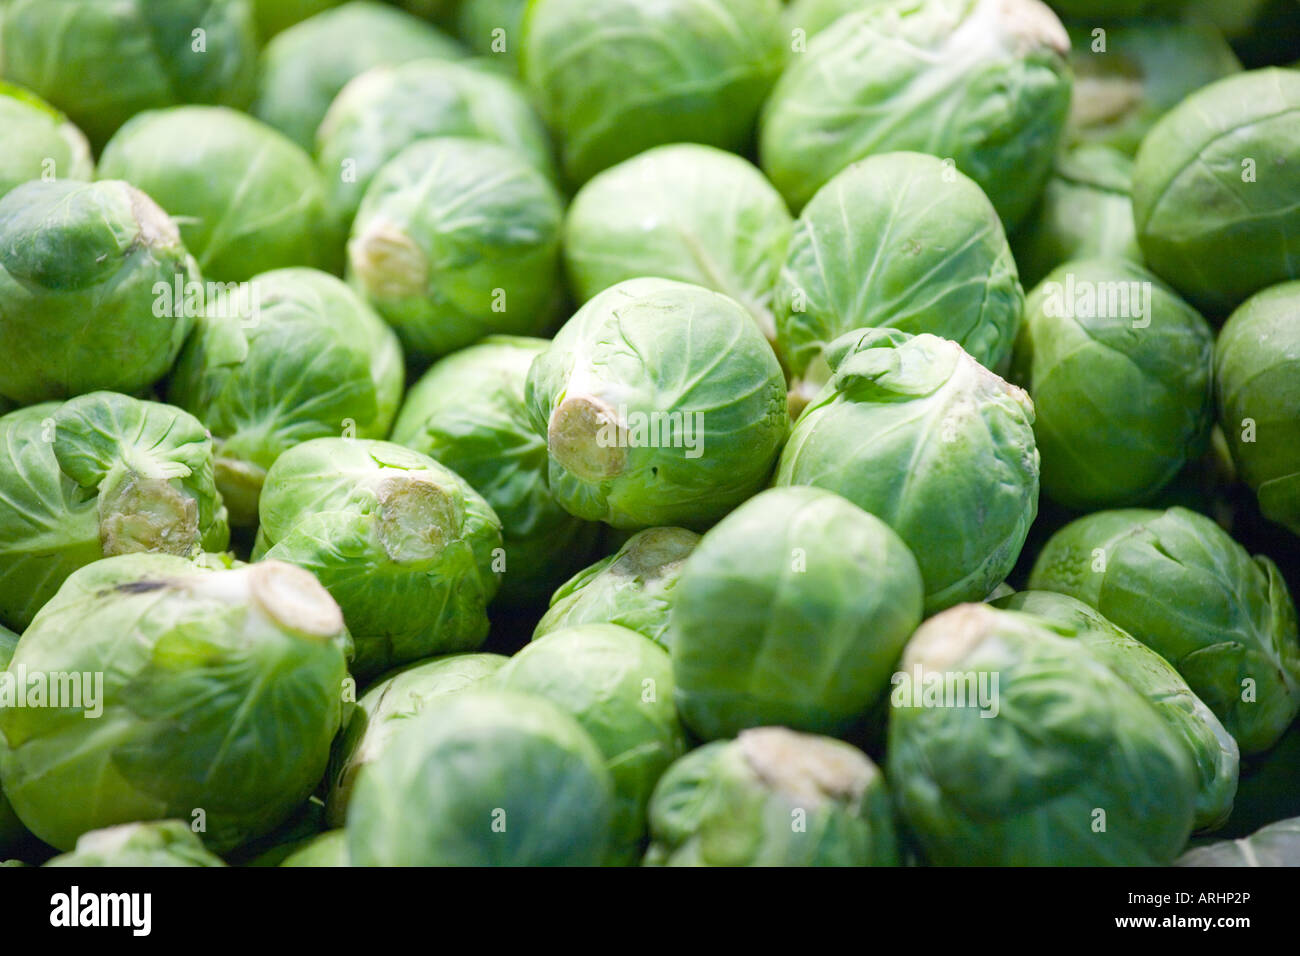 brussels sprout in la boqueria market Stock Photo